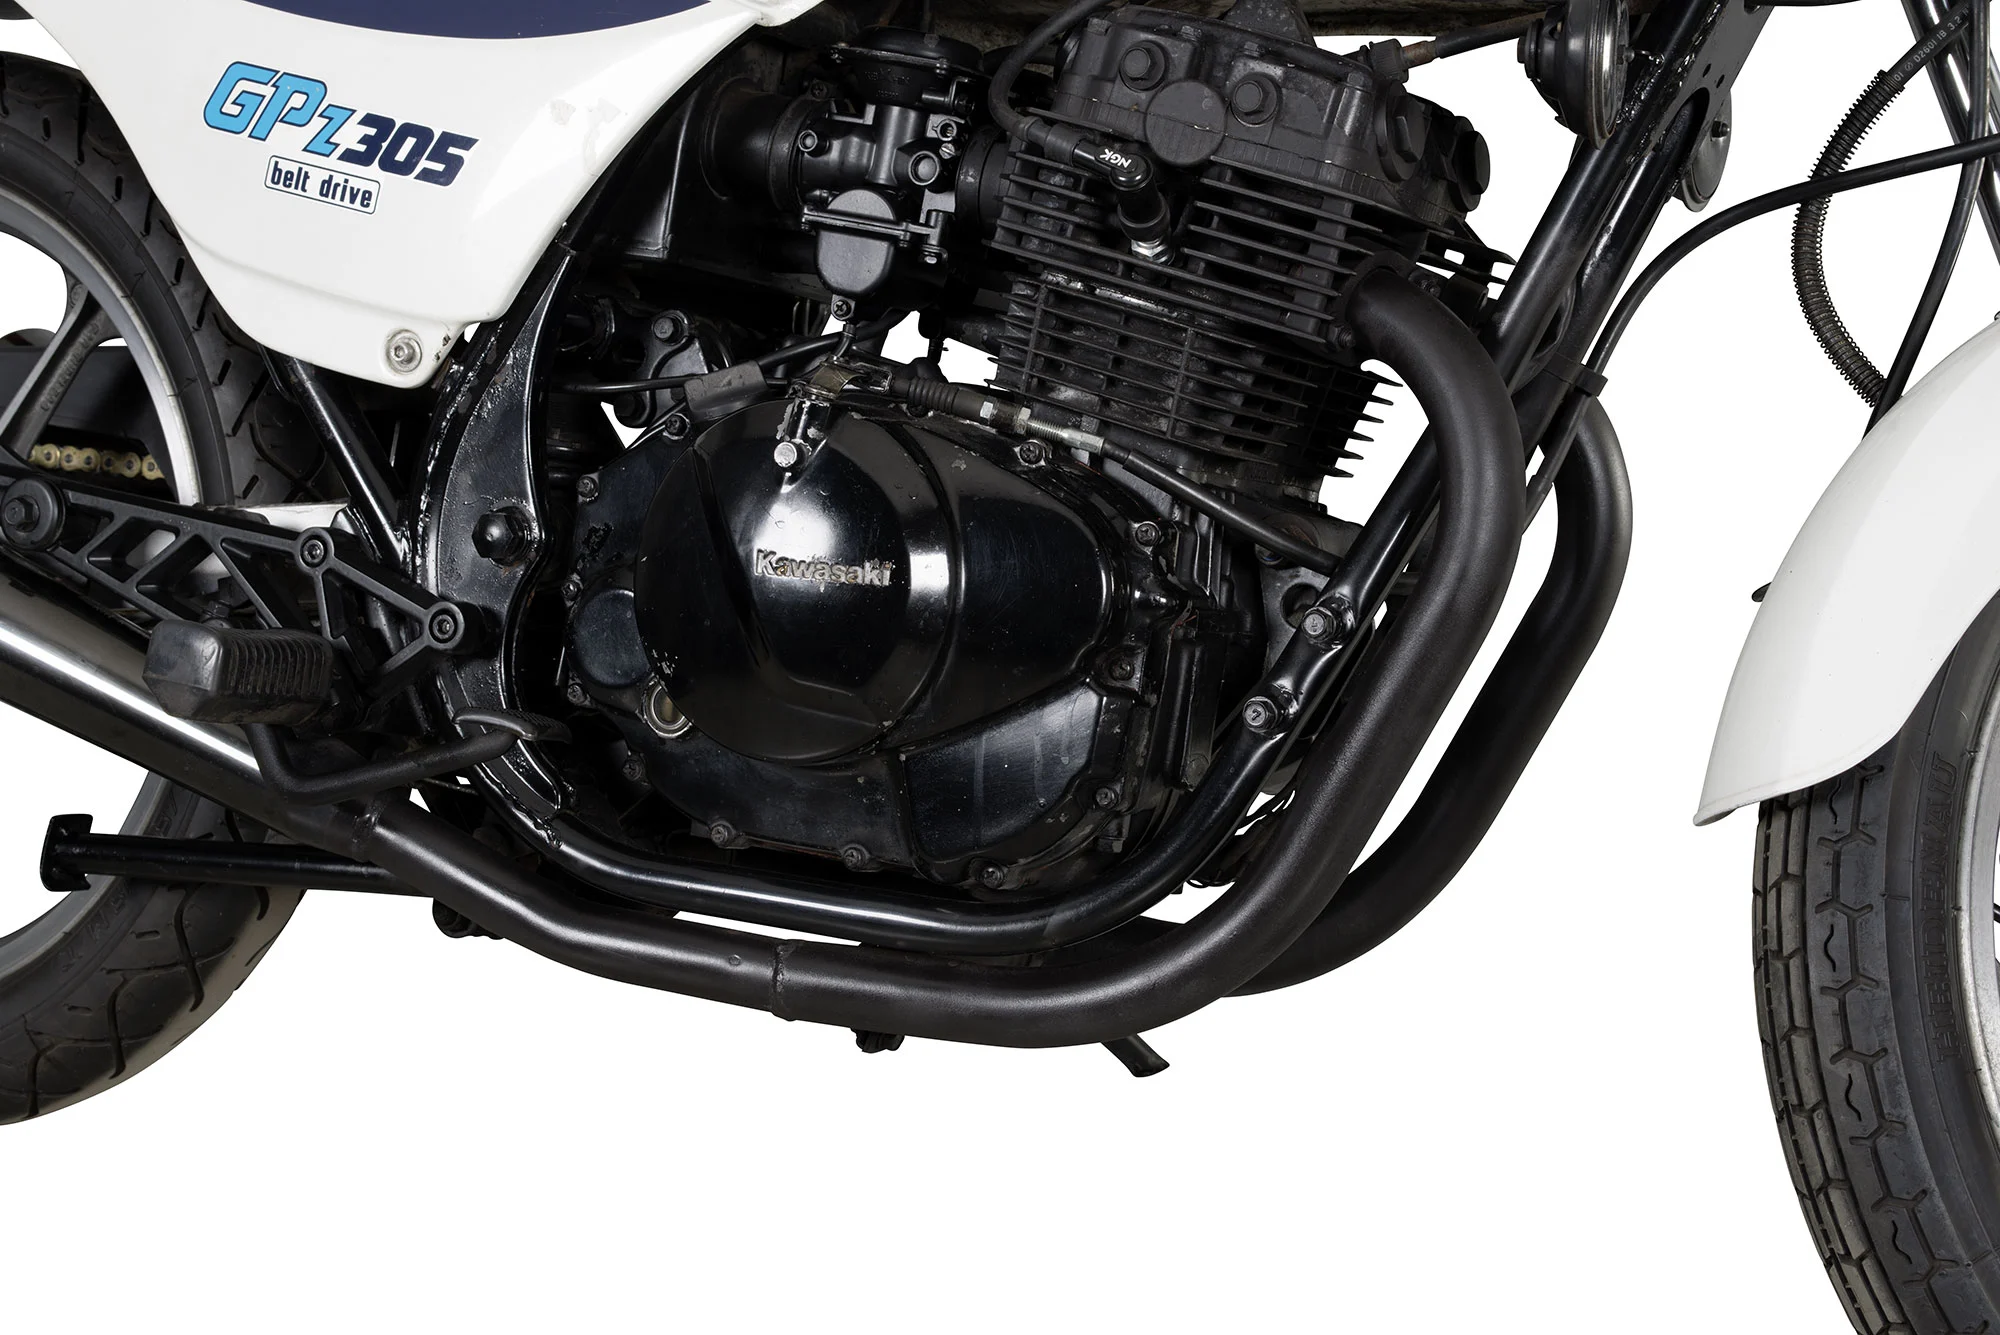 Auspufflack schwarz-matt 850°C hitzebeständig : : Auto & Motorrad